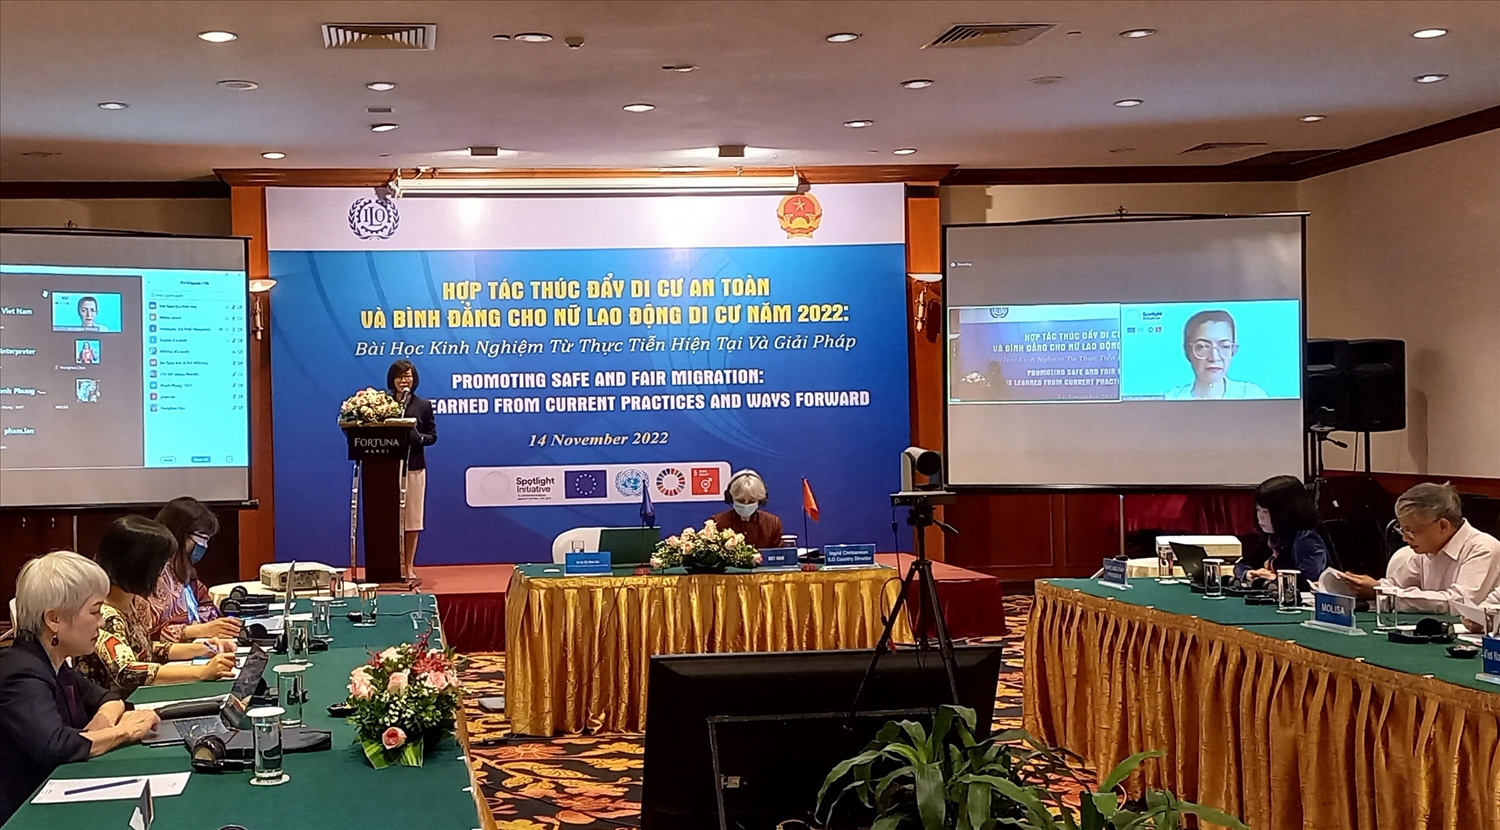 Hội thảo Hợp tác thúc đẩy di cư lao động an toàn và bình đẳng cho lao động di cư nữ do Bộ LĐTB&XH phối hợp cùng Văn phòng ILO Việt Nam tổ chức ngày 14/11/2022, tại Hà Nội.